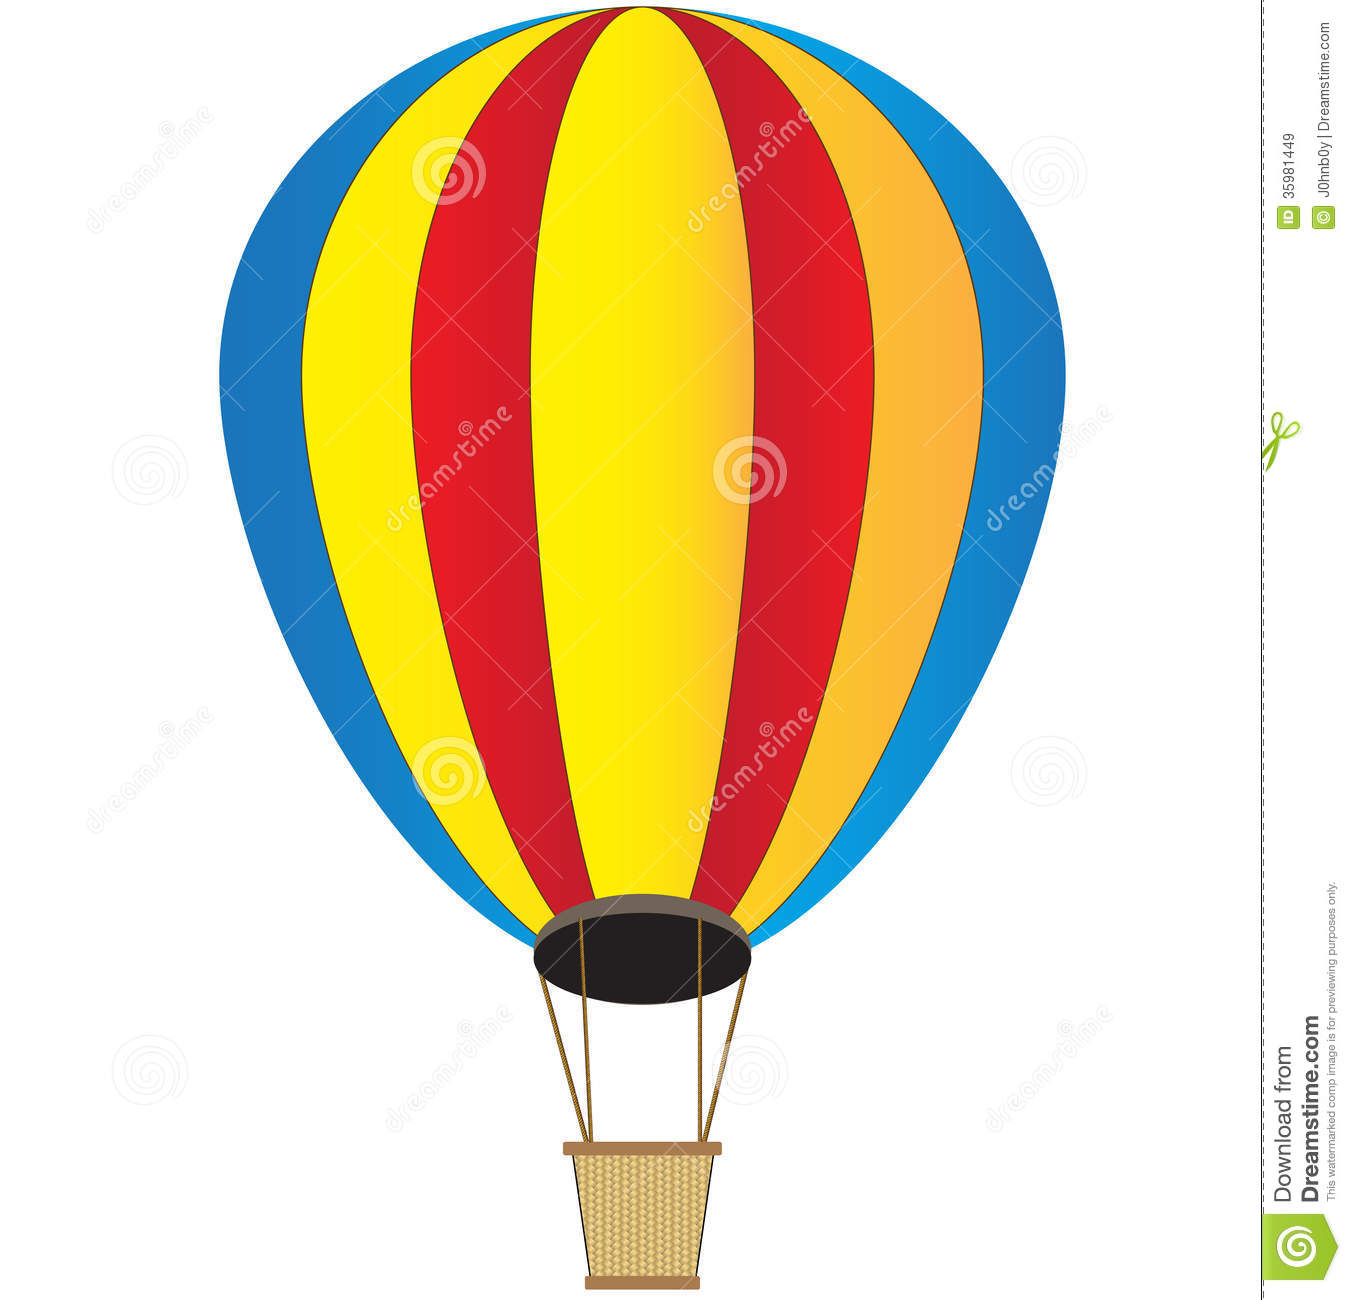 basket clipart hot air balloon